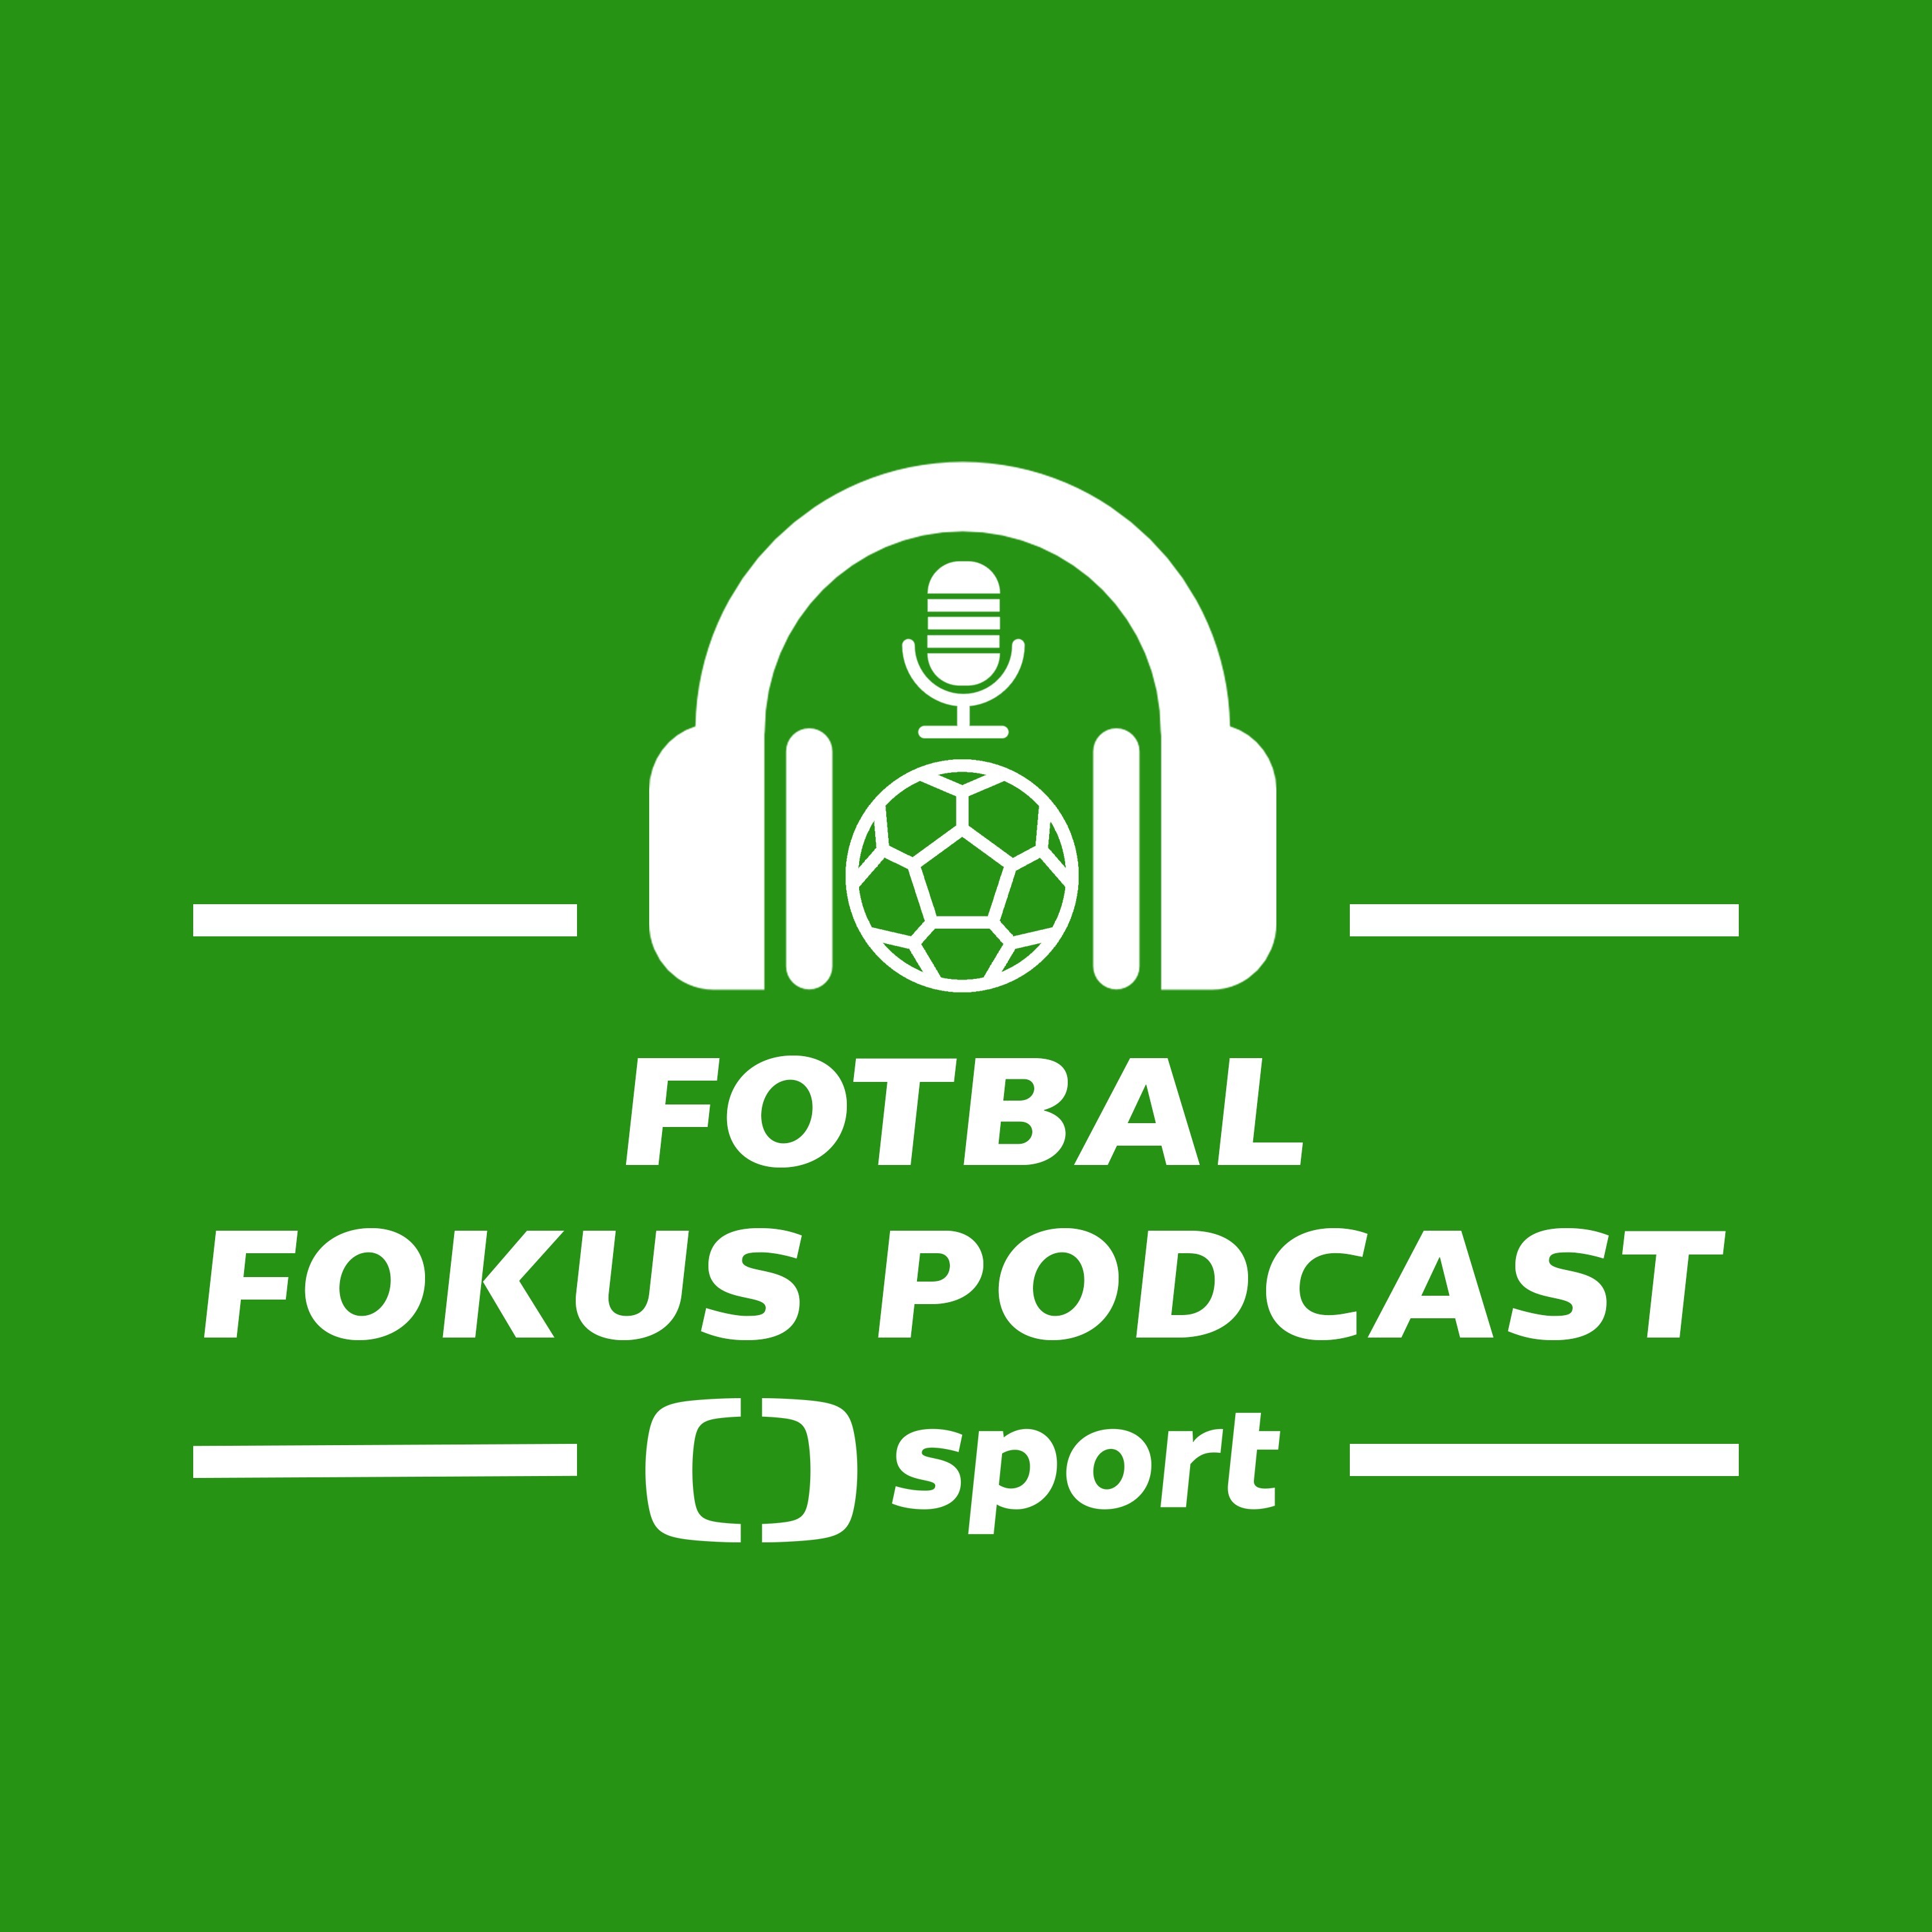 Fotbal fokus podcast: Mají druholigisté v baráži šanci a měly by kluby bojkotovat finále v Baku?